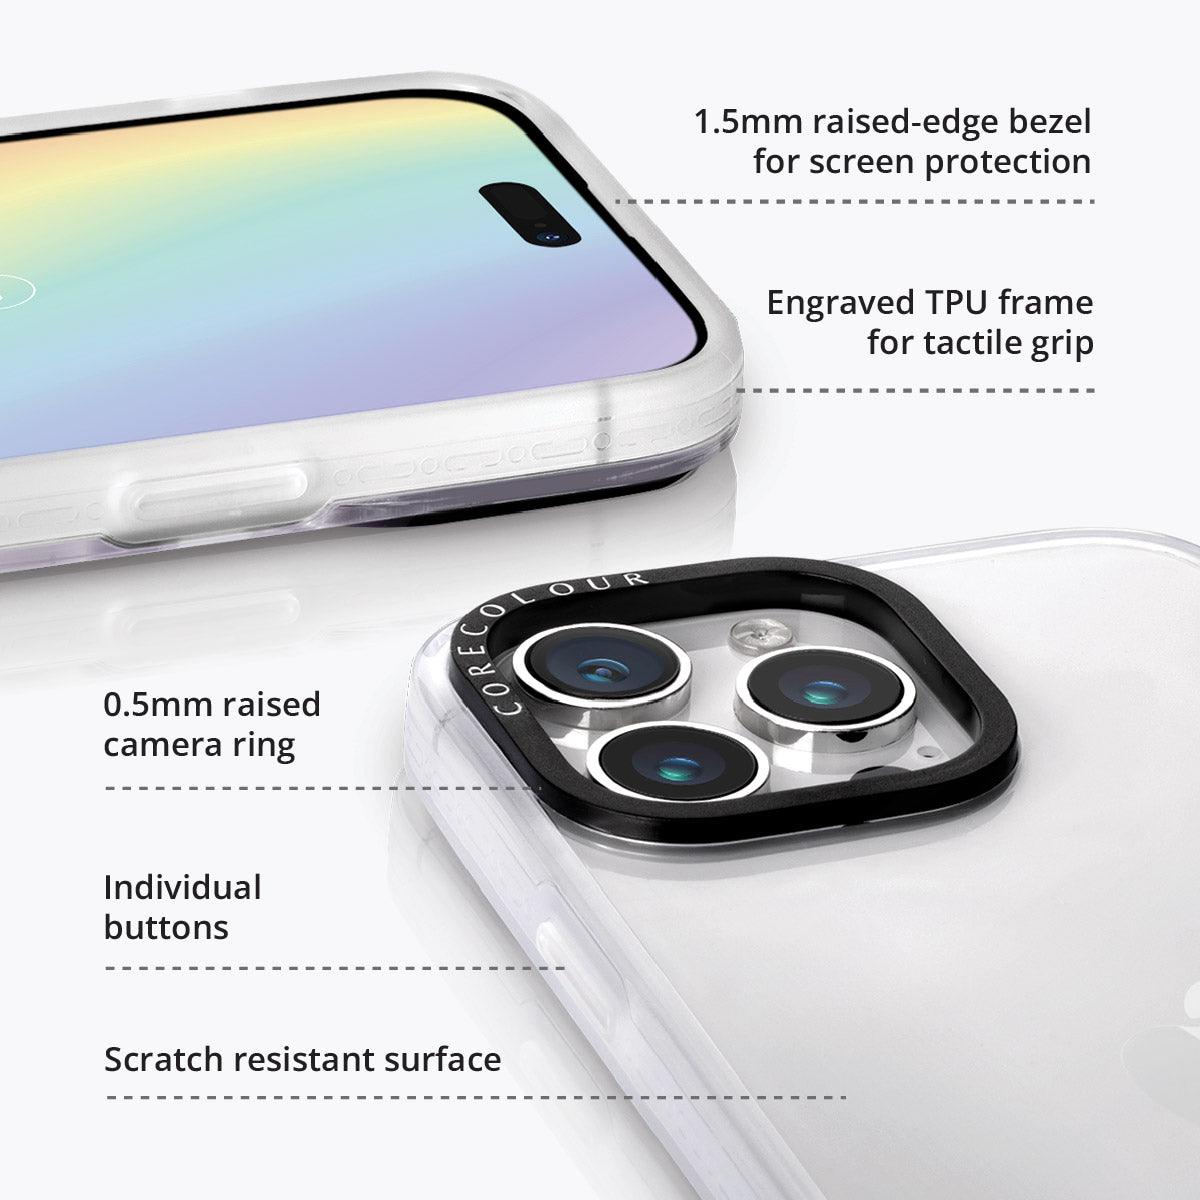 iPhone 13 Pro Max Gummy Land Phone Case - CORECOLOUR